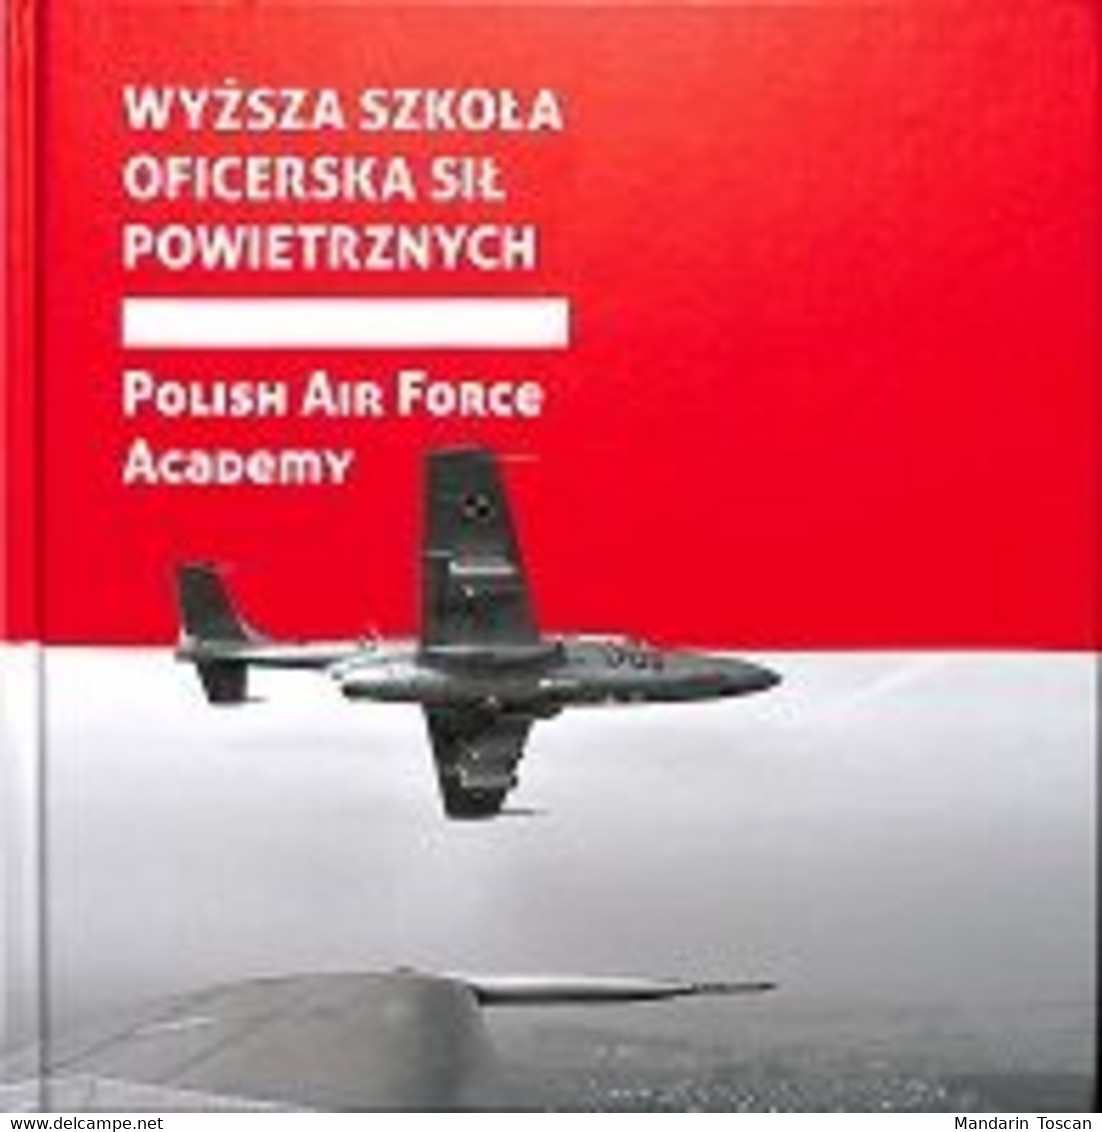 Polish Air Force Academy - Wyzsza Szkola Oficerska Sil Powietrznych (2013)